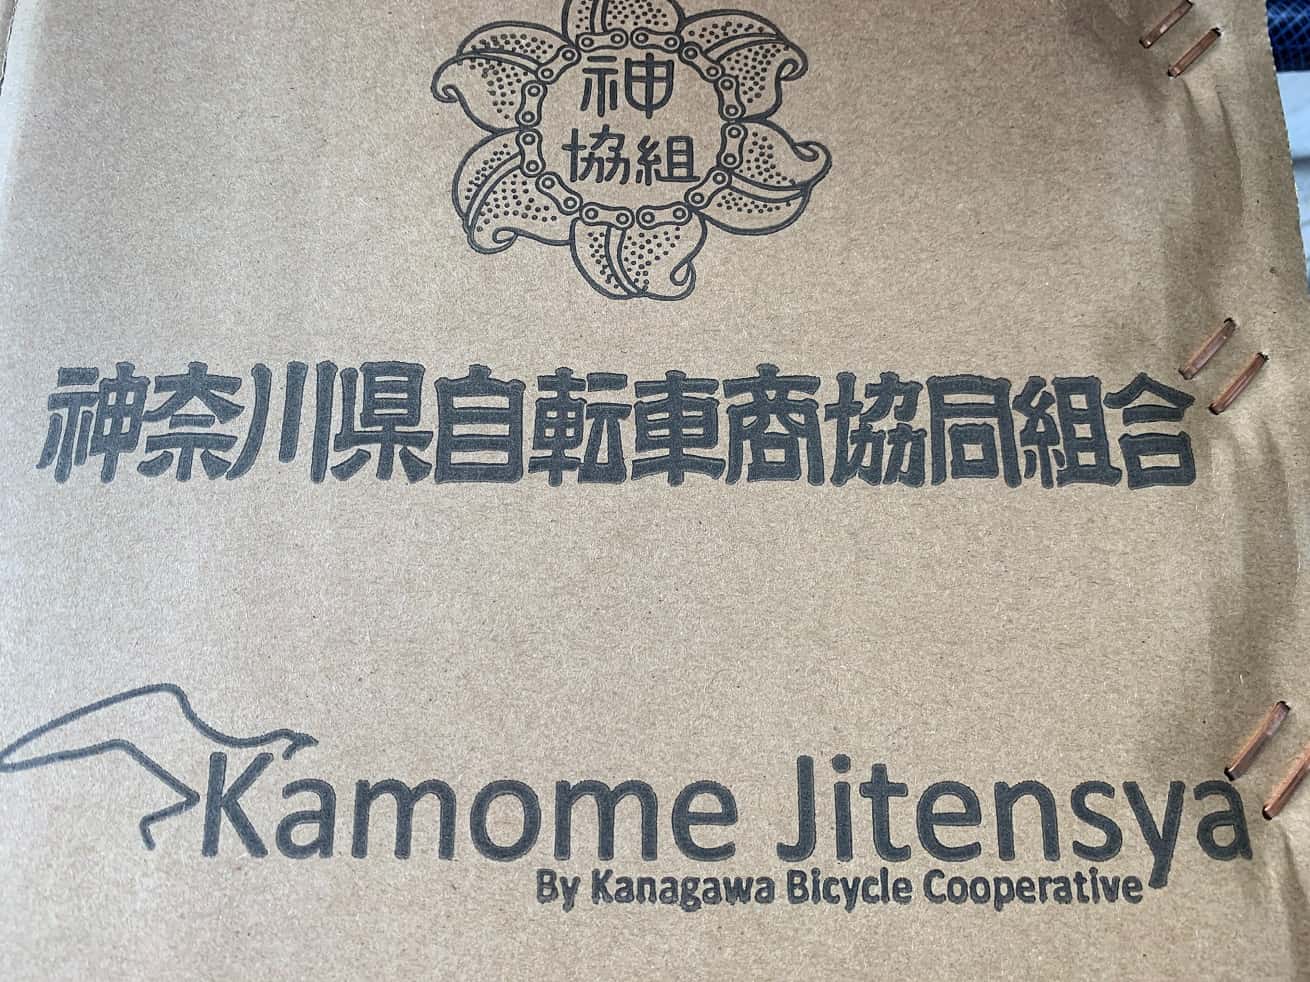 かもめ自転車の自転車梱包箱のロゴ